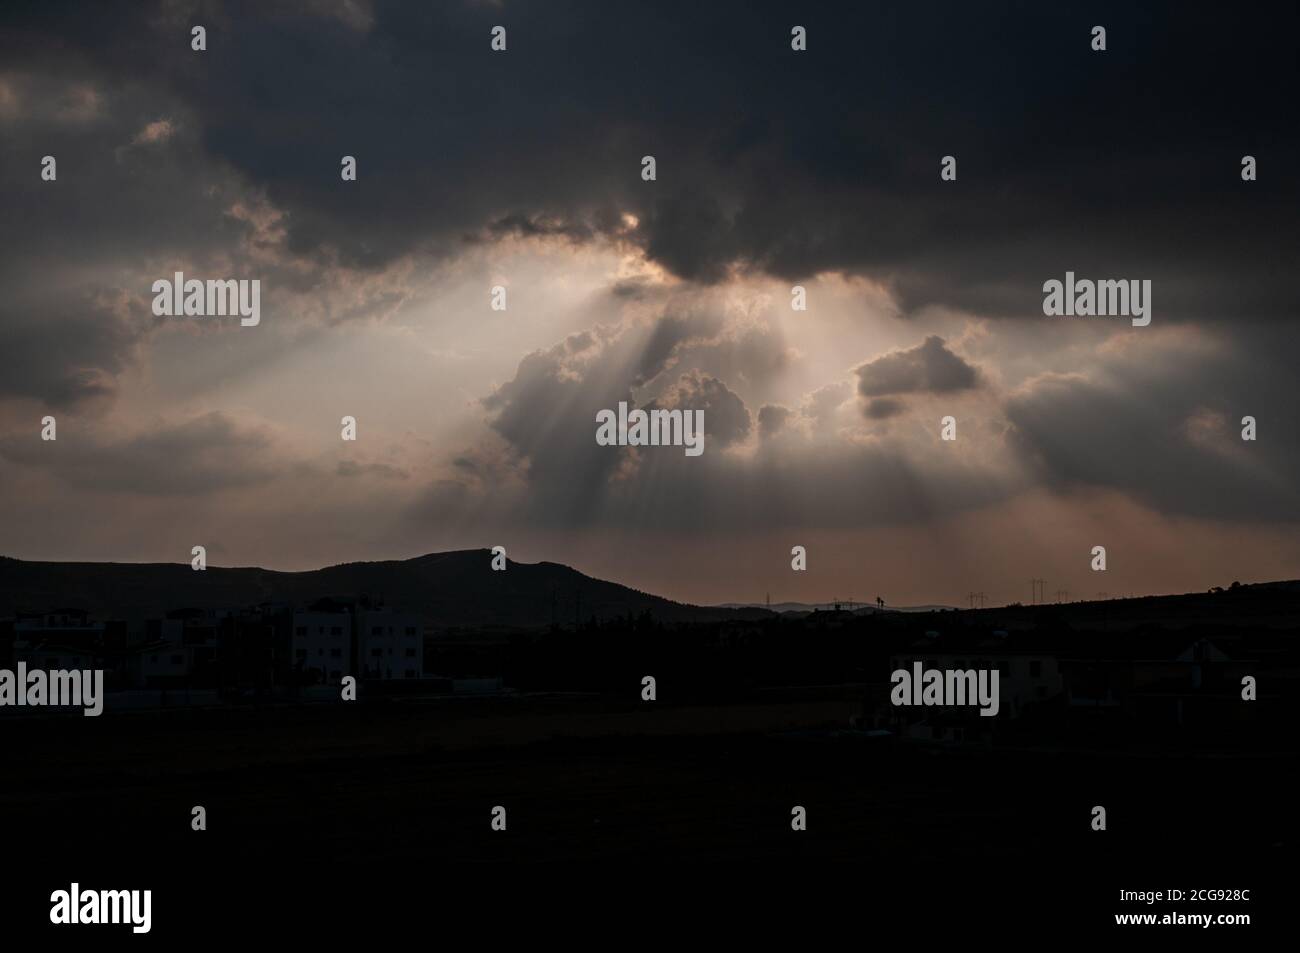 Raggi di luce solare che si infrangono attraverso nuvole pesanti su paesaggi silhouette di Cipro sud-orientale. Foto Stock